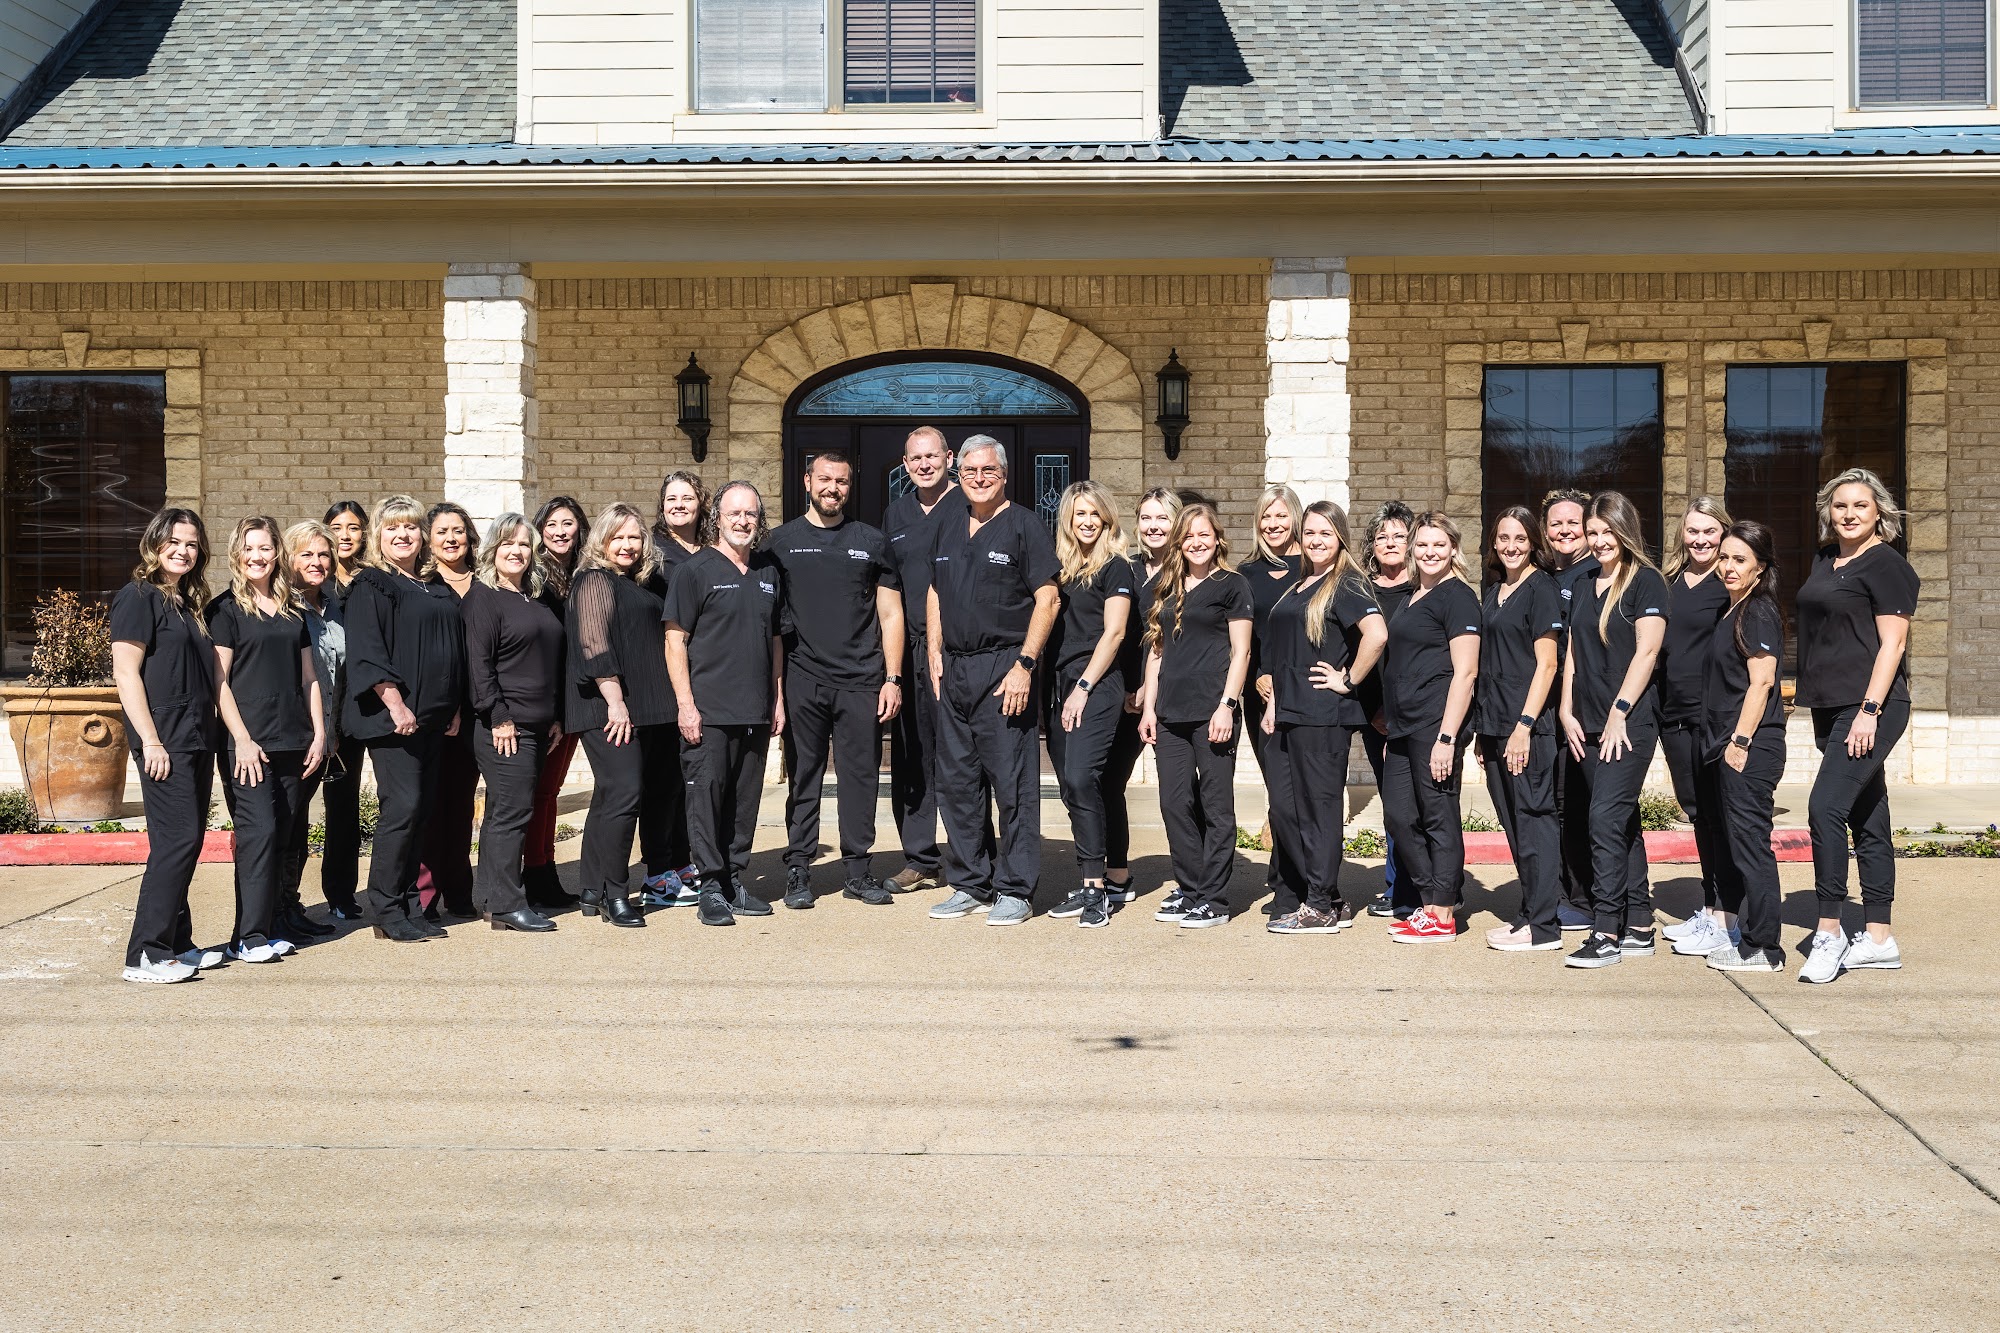 Legacy Dental Group 240 TX-243, Canton Texas 75103